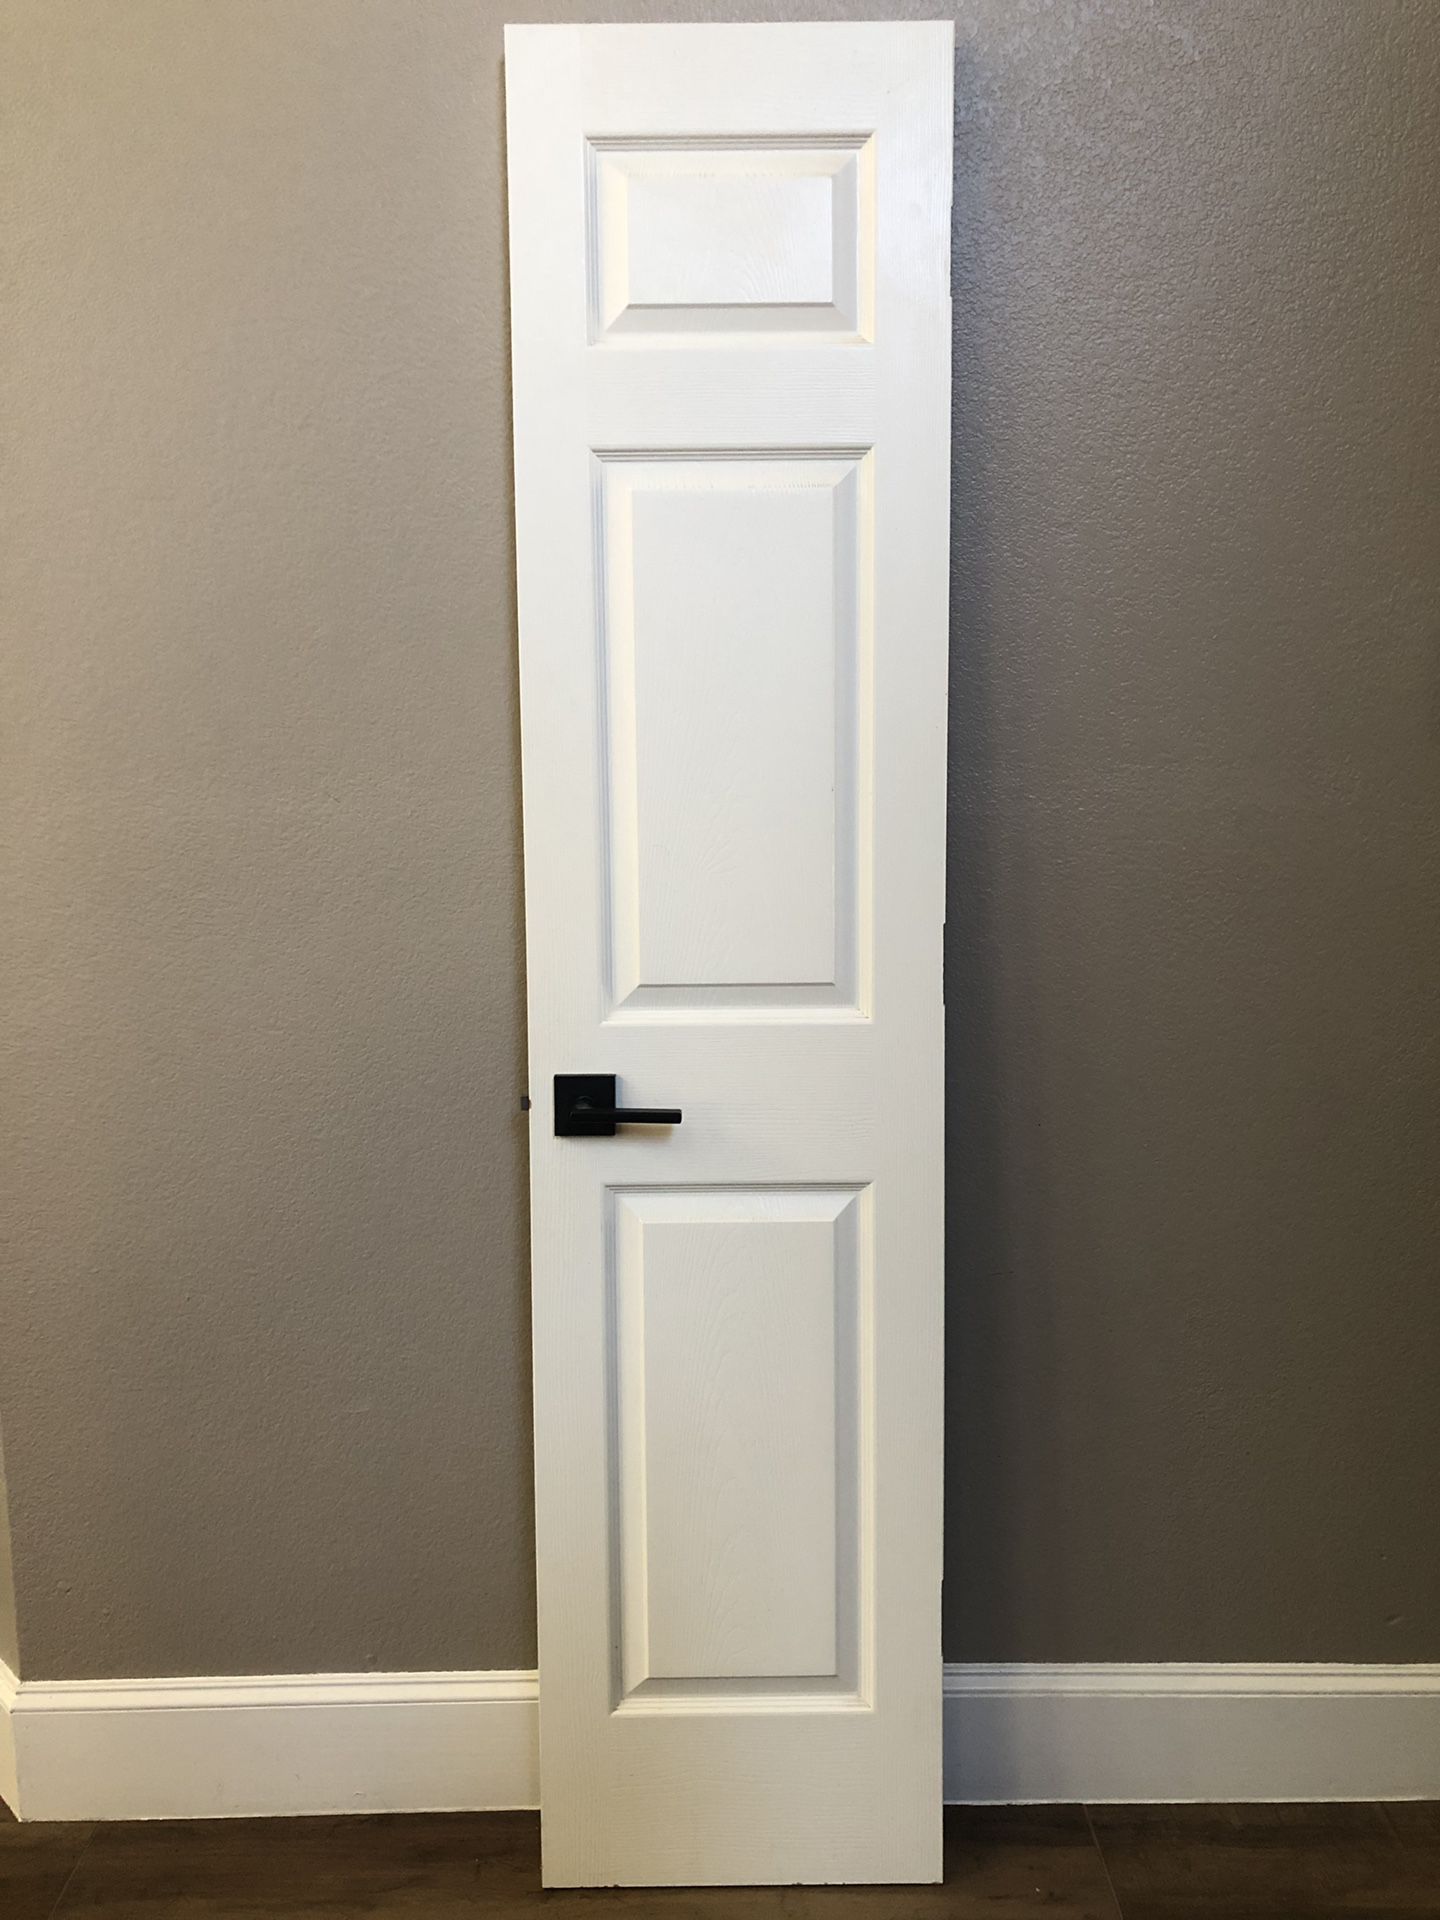 3 panel wood door - 18” x 79.5”